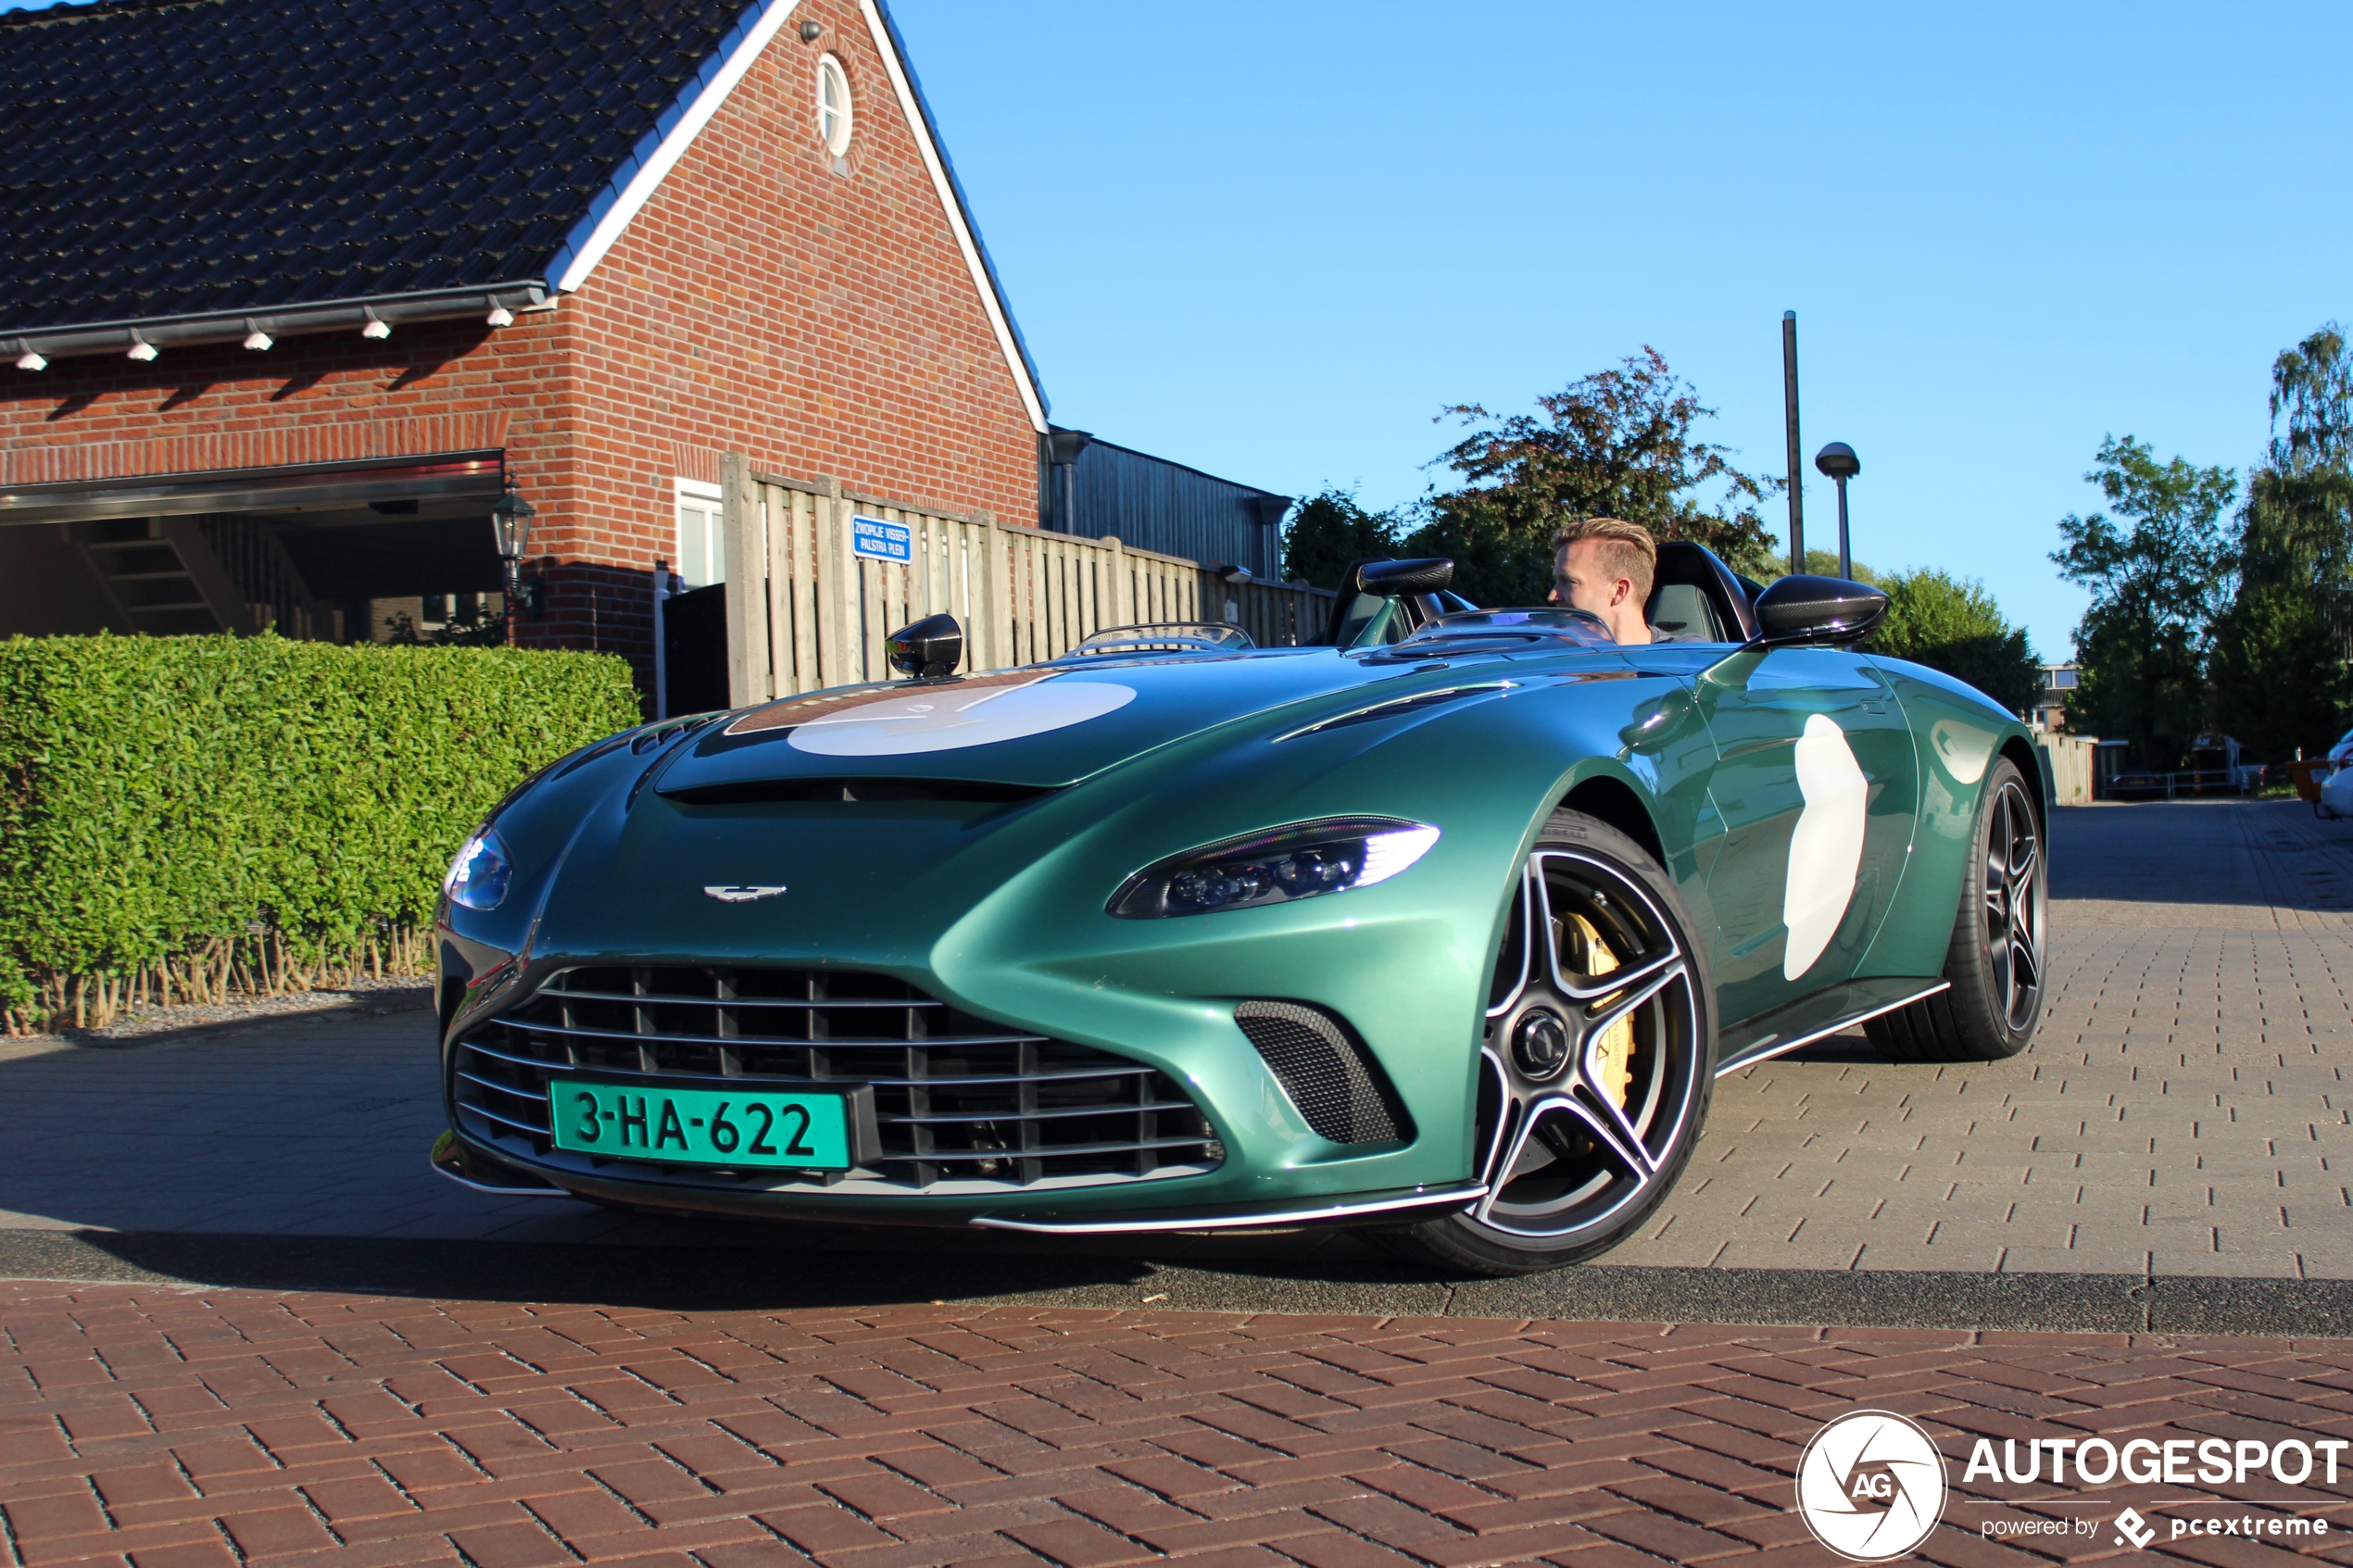 Nederland weer Aston Martin V12 Speedster rijker